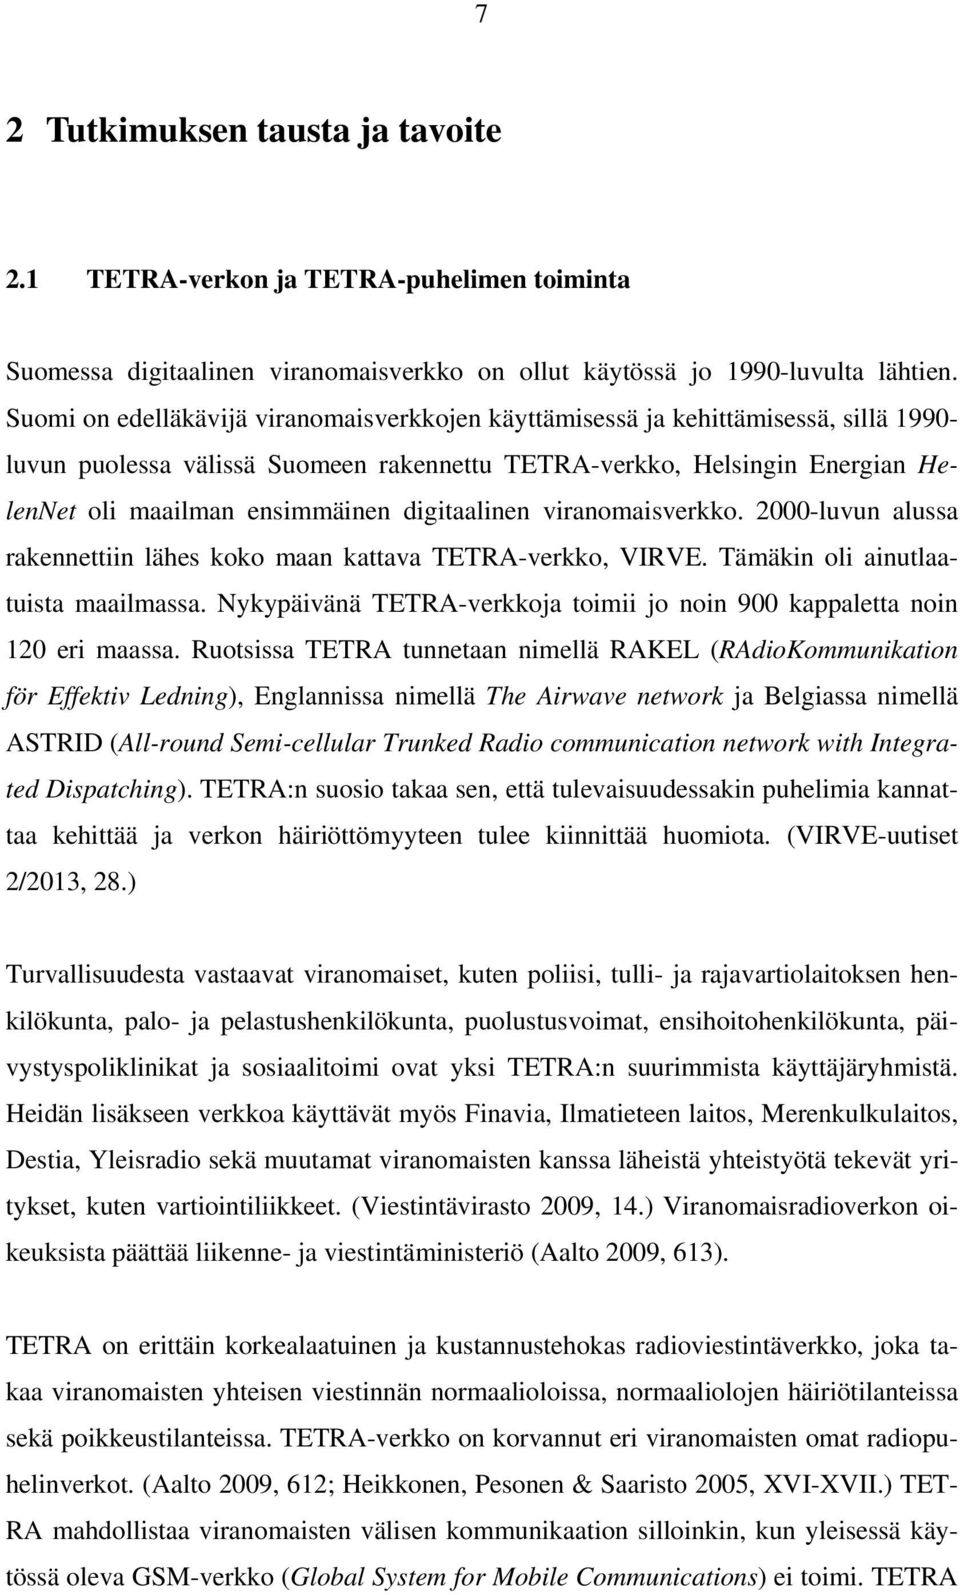 digitaalinen viranomaisverkko. 2000-luvun alussa rakennettiin lähes koko maan kattava TETRA-verkko, VIRVE. Tämäkin oli ainutlaatuista maailmassa.